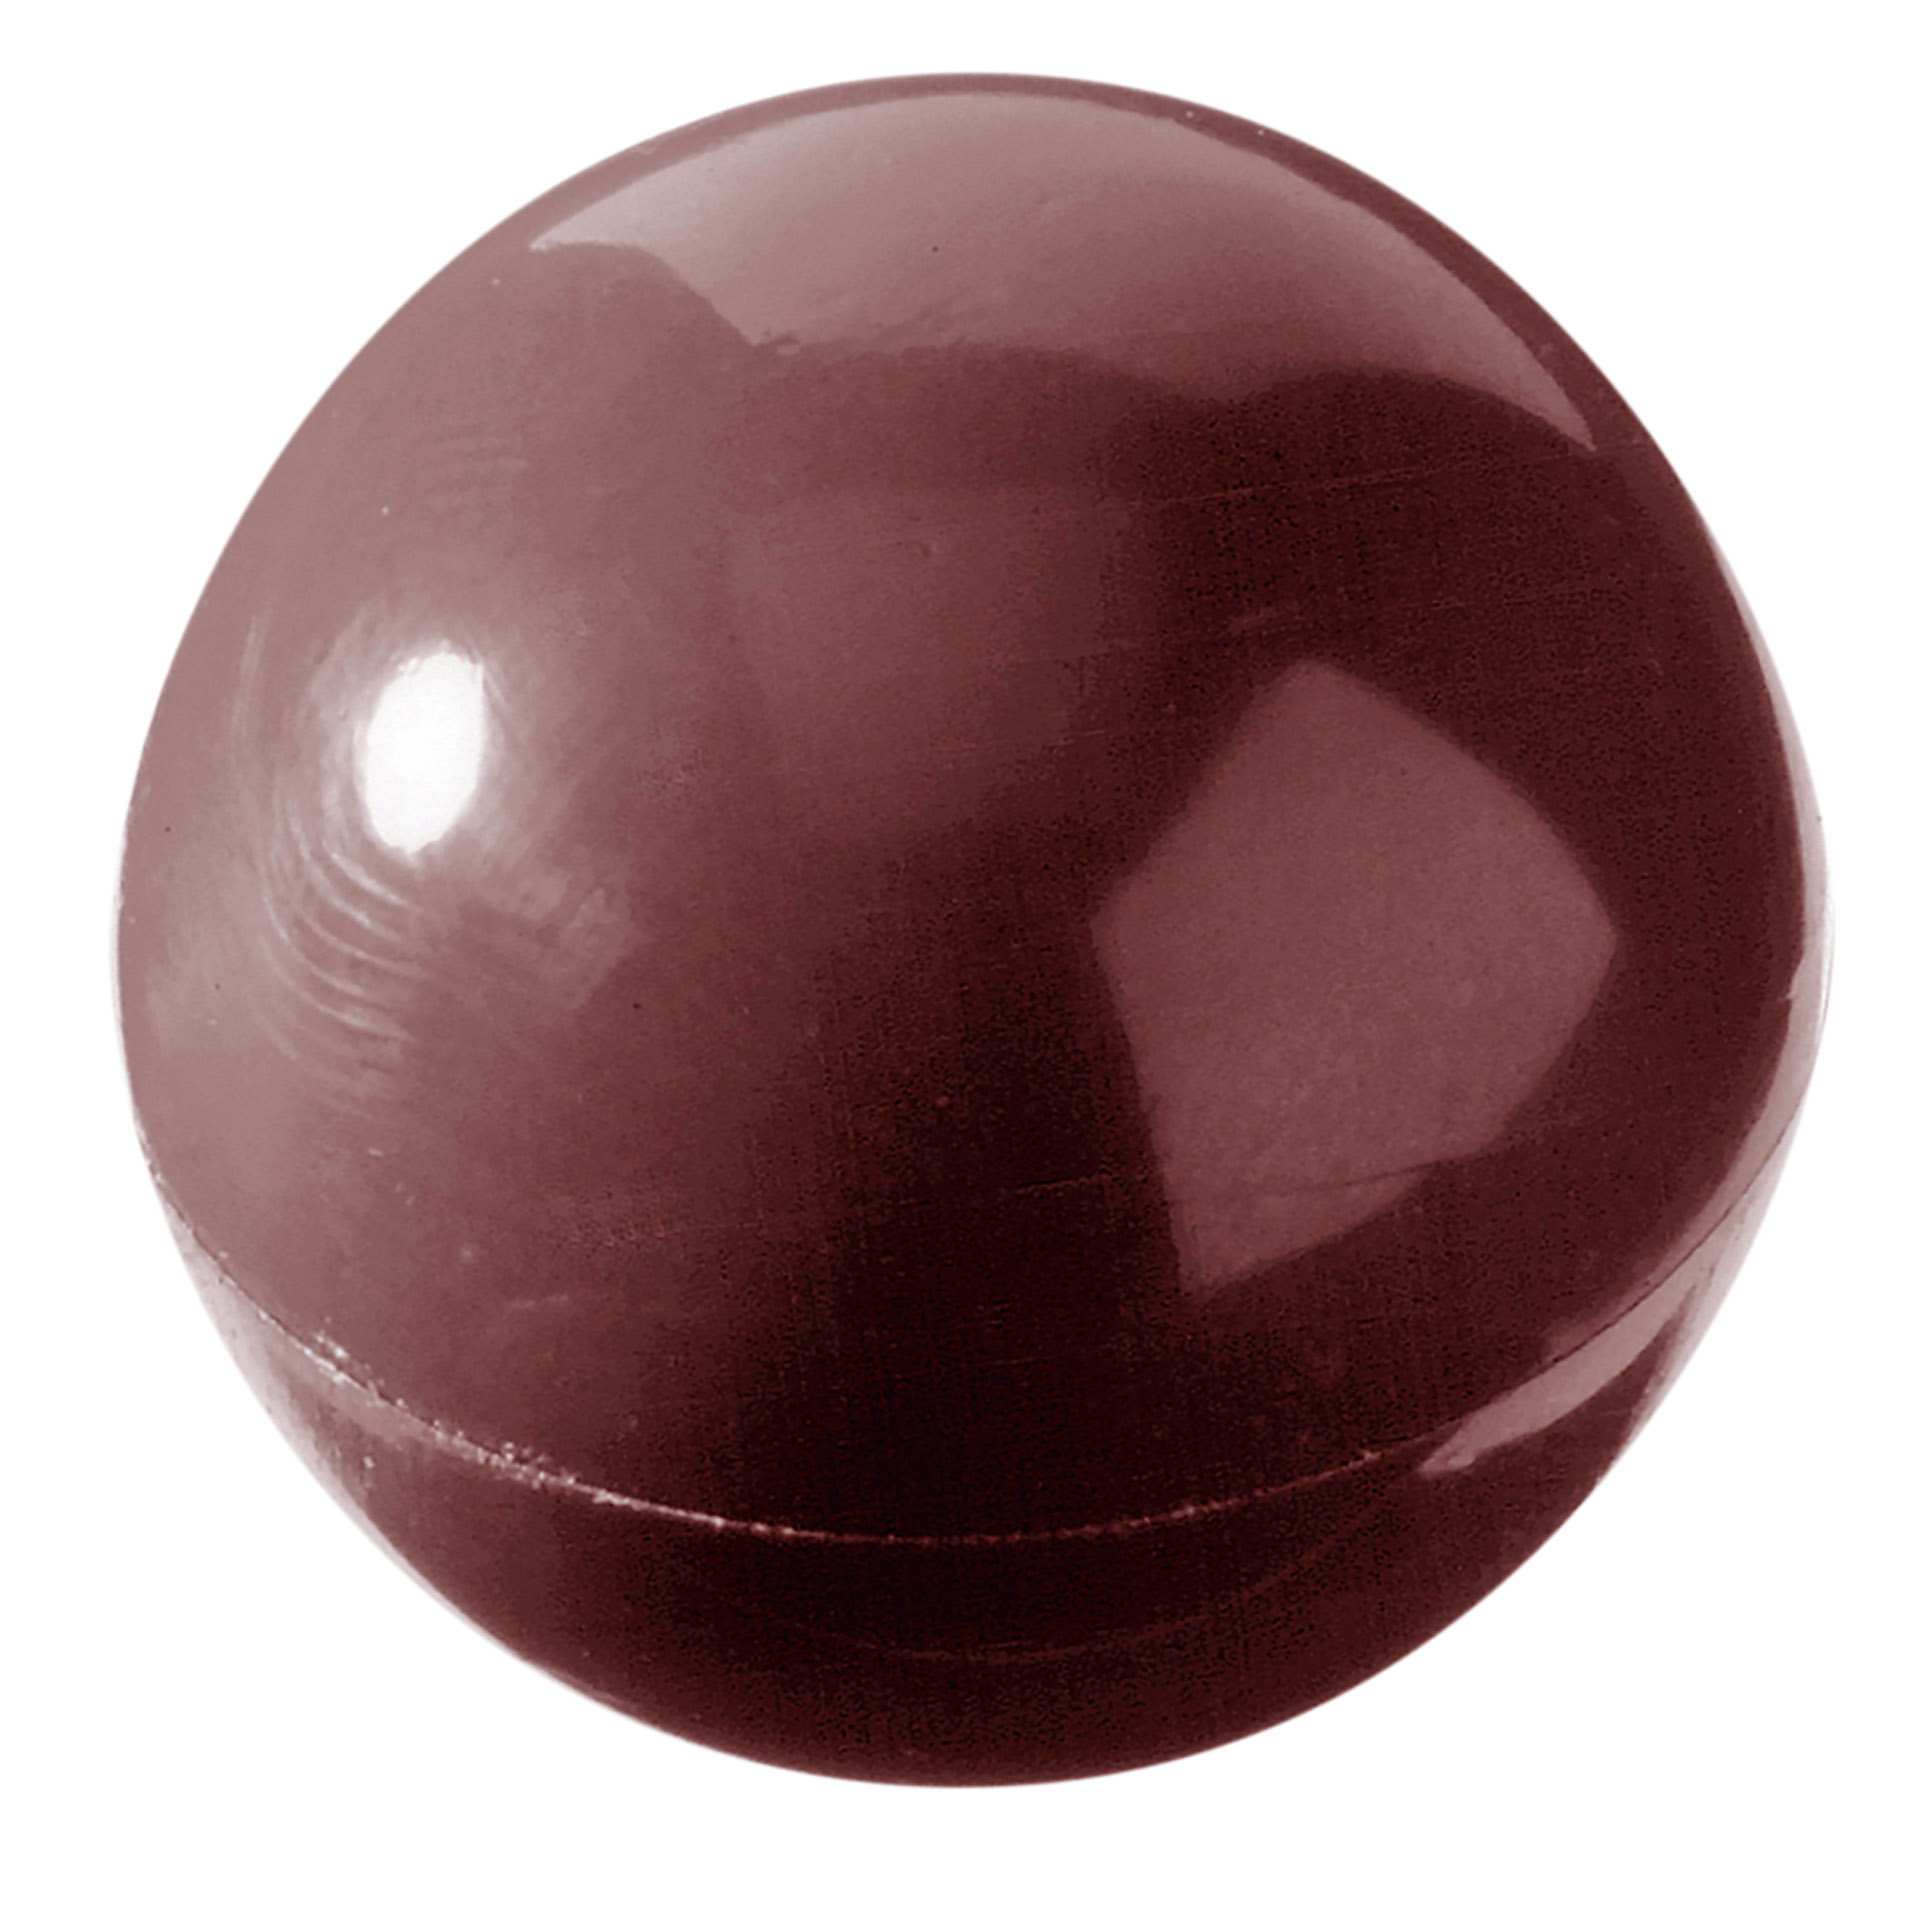 Schokoladen-Form - Halbkugel Ø 27 mm - Abm. 27,5 x 13,5 x 2,4 cm - Polycarbonat - 421258-C